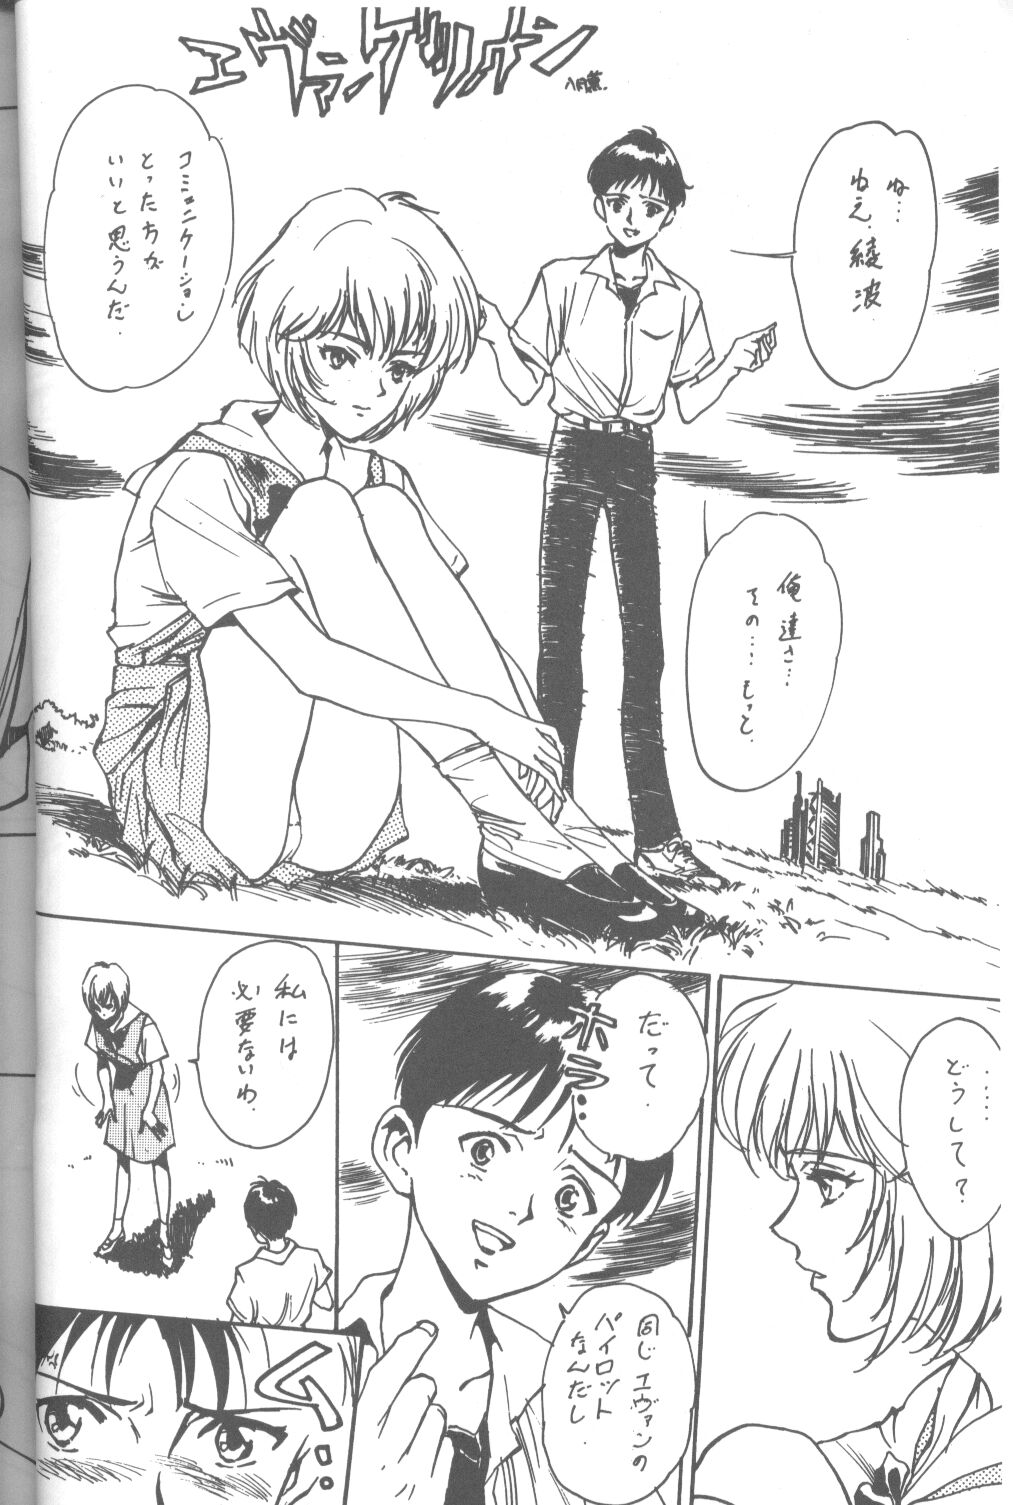 [Takahiro Kutugi] Friends Yes We're (Evangelion) page 51 full